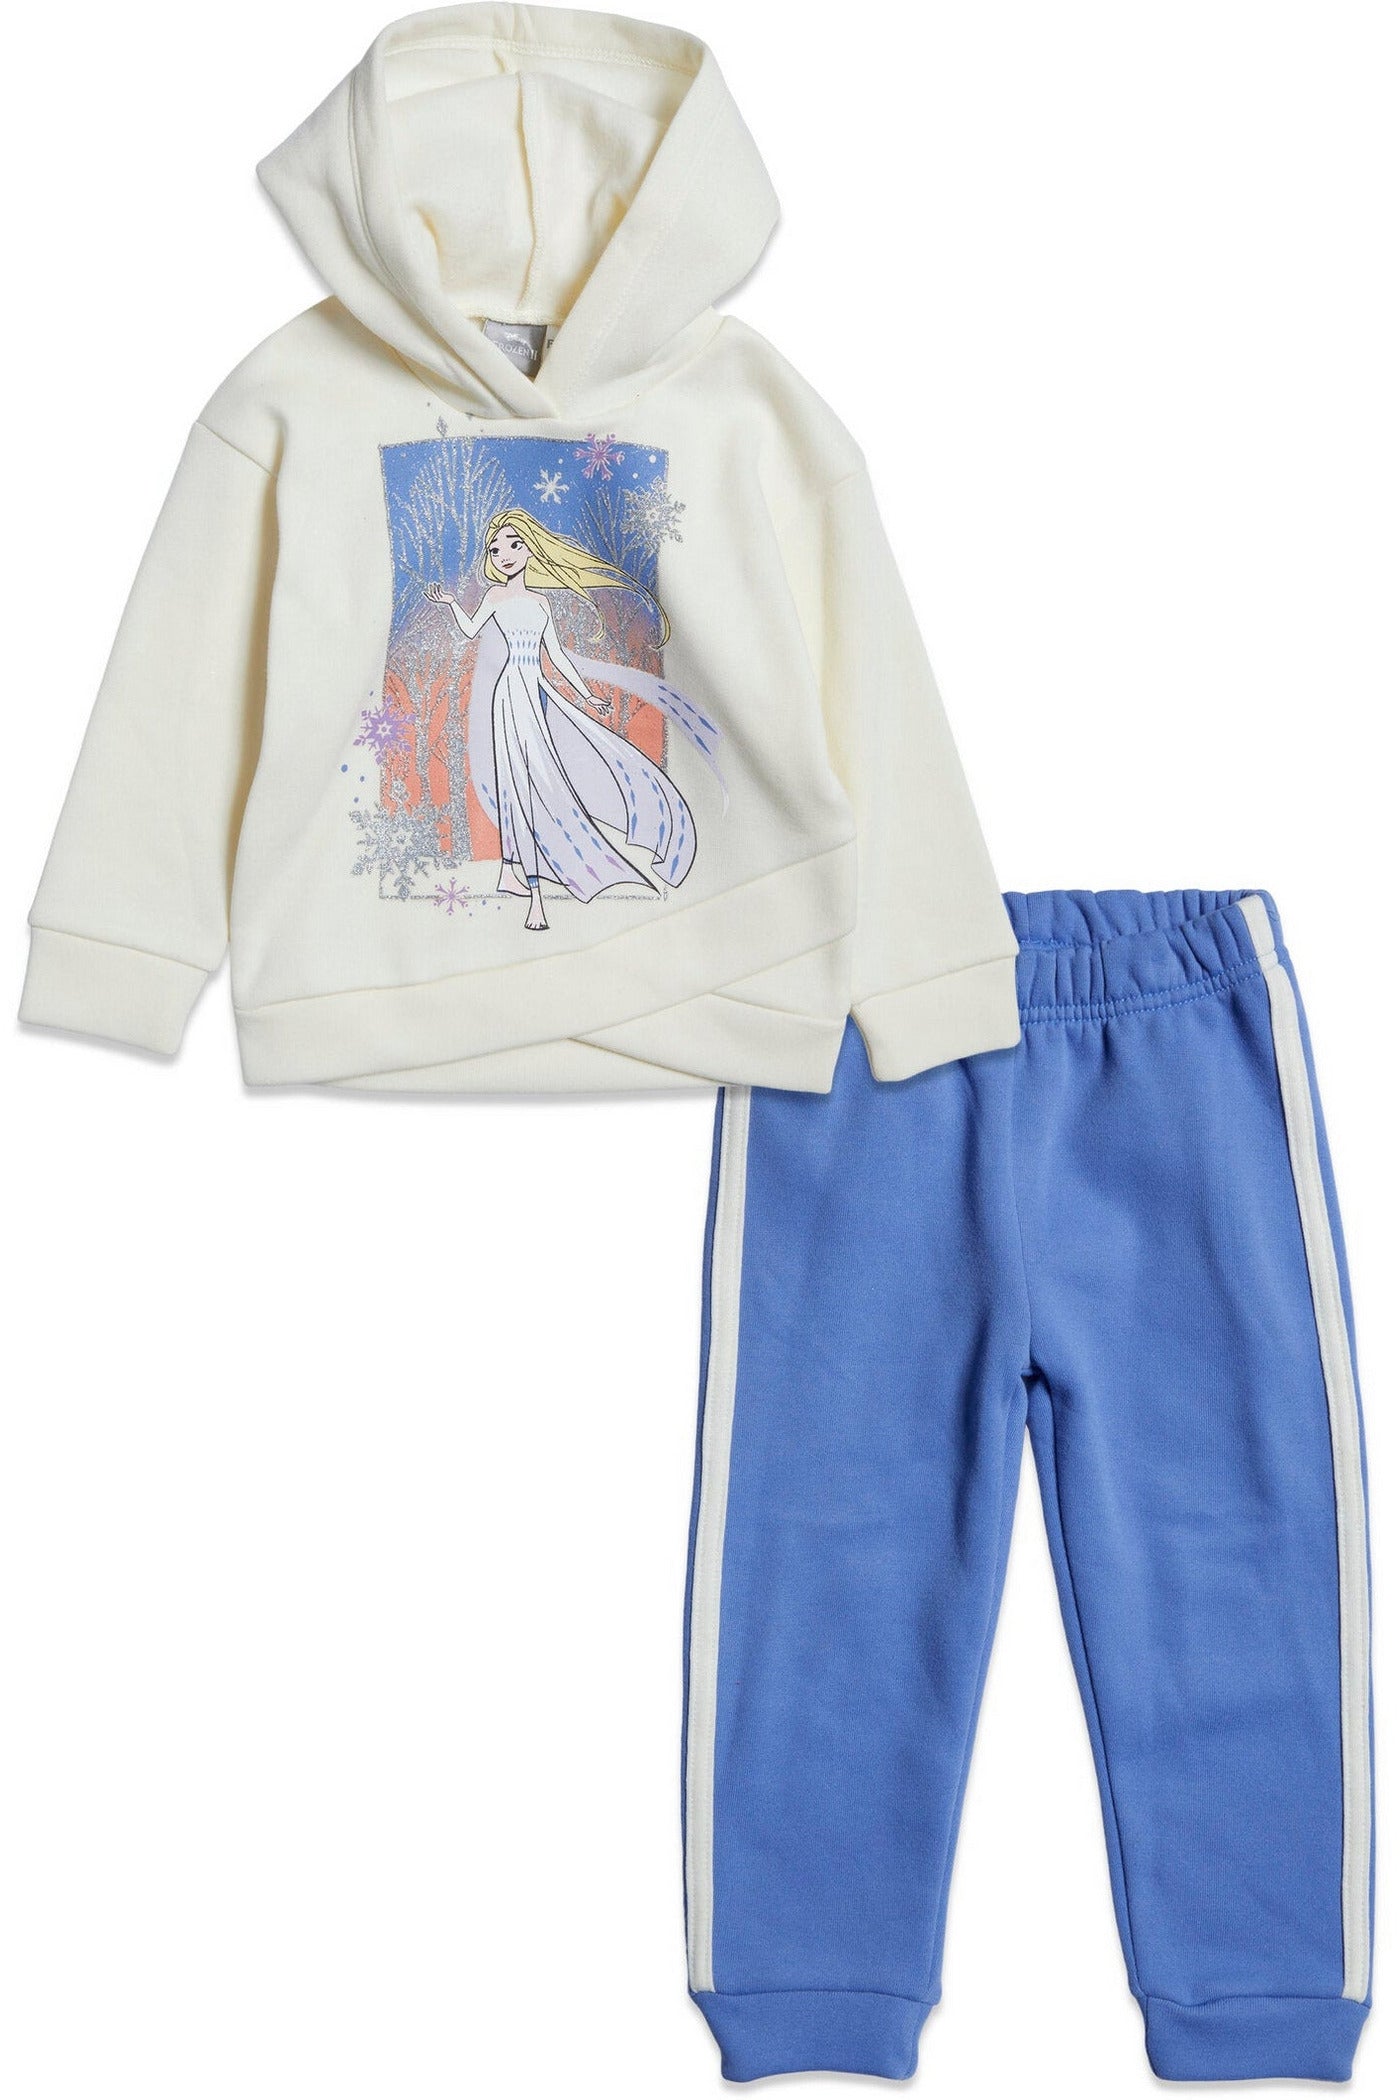 Queen Elsa Fleece Jogger Pullover Crossover Hoodie & Pants Set